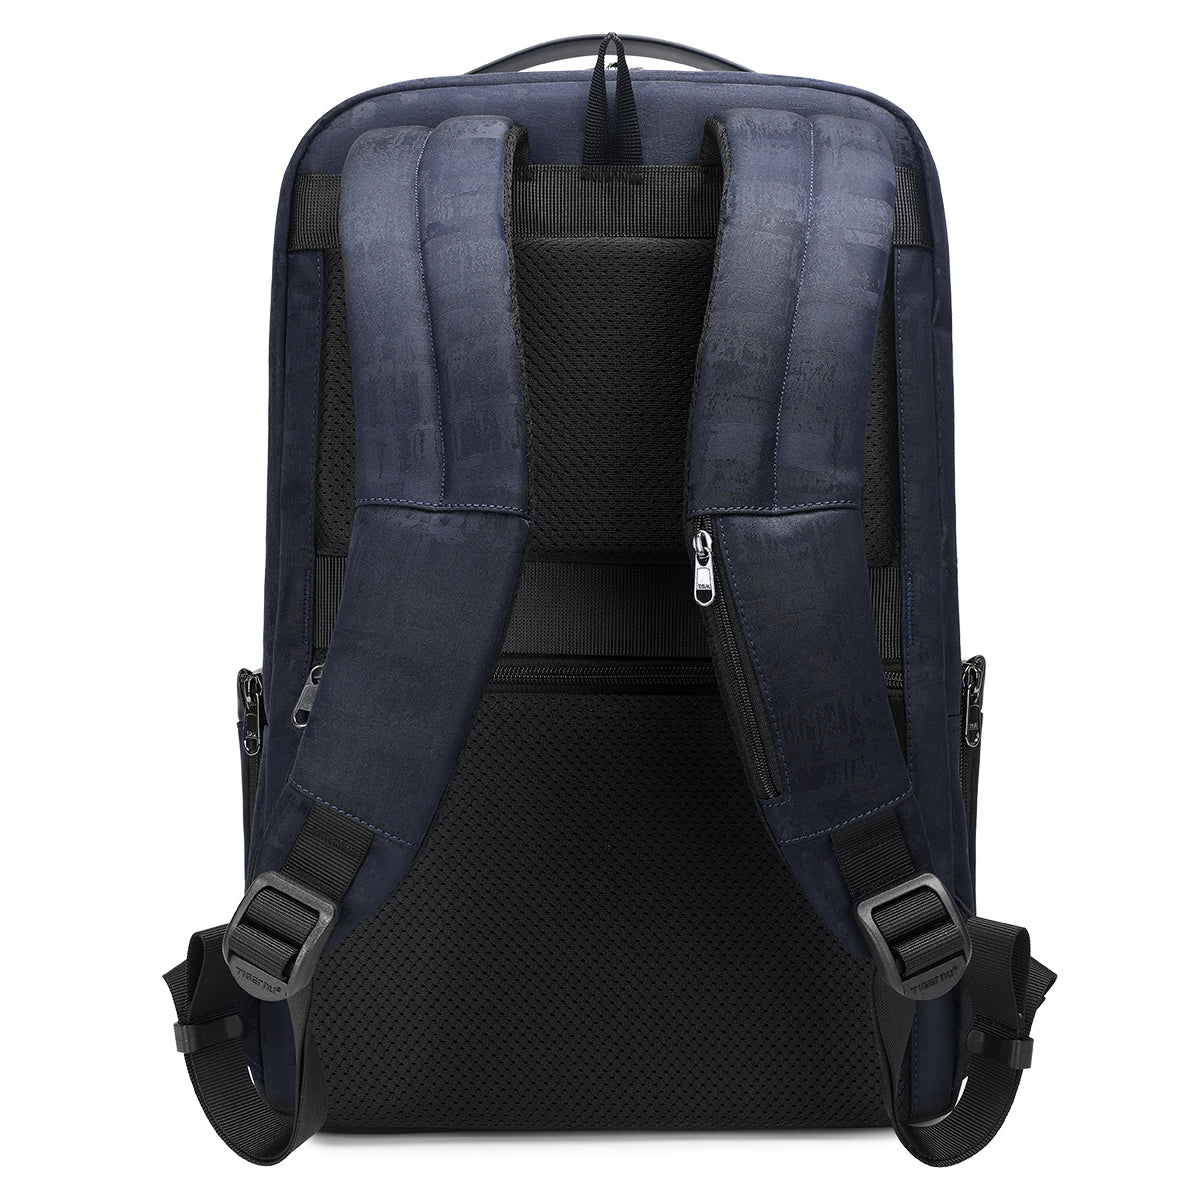 Tigernu Retro Laptop Backpack Blue